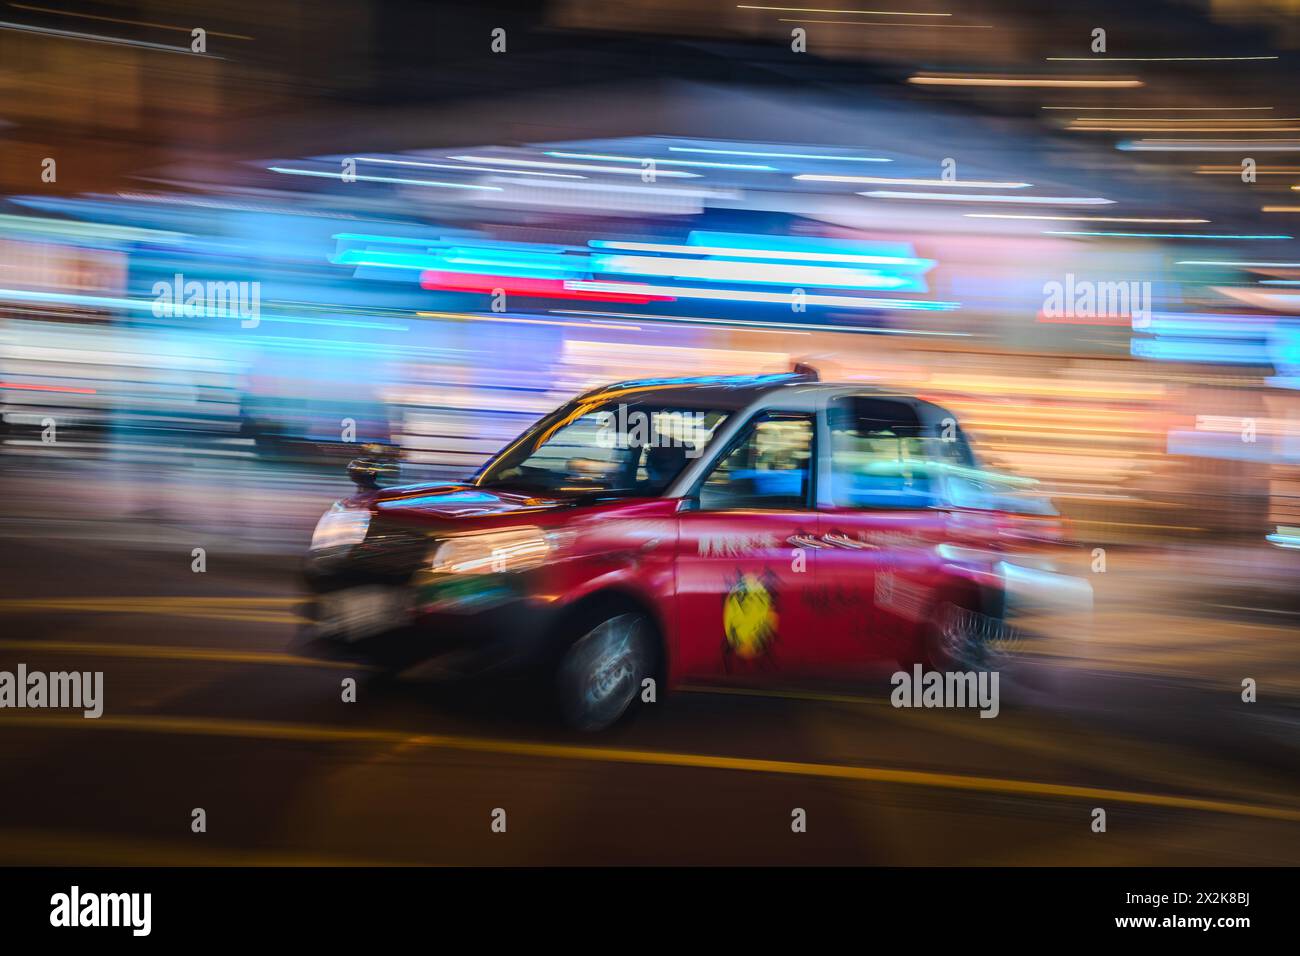 Un'immagine vibrante che cattura l'essenza in rapido movimento di un taxi rosso in una città di notte. La sfocatura in movimento trasmette velocità ed energia urbana in mezzo a strade colorate Foto Stock